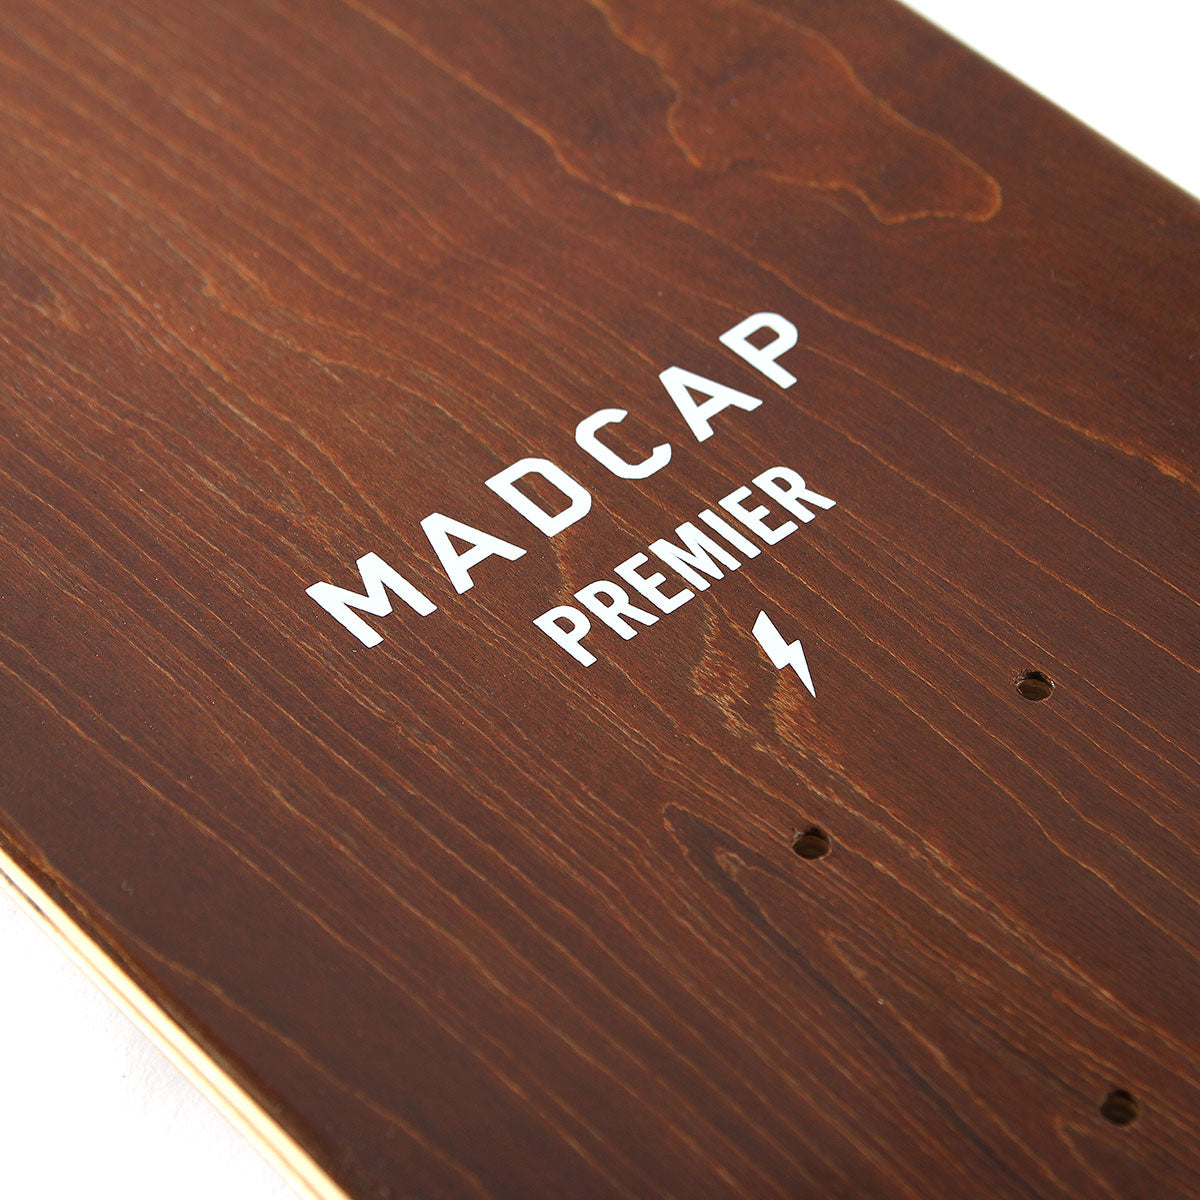 Premier x Madcap Bolt Deck